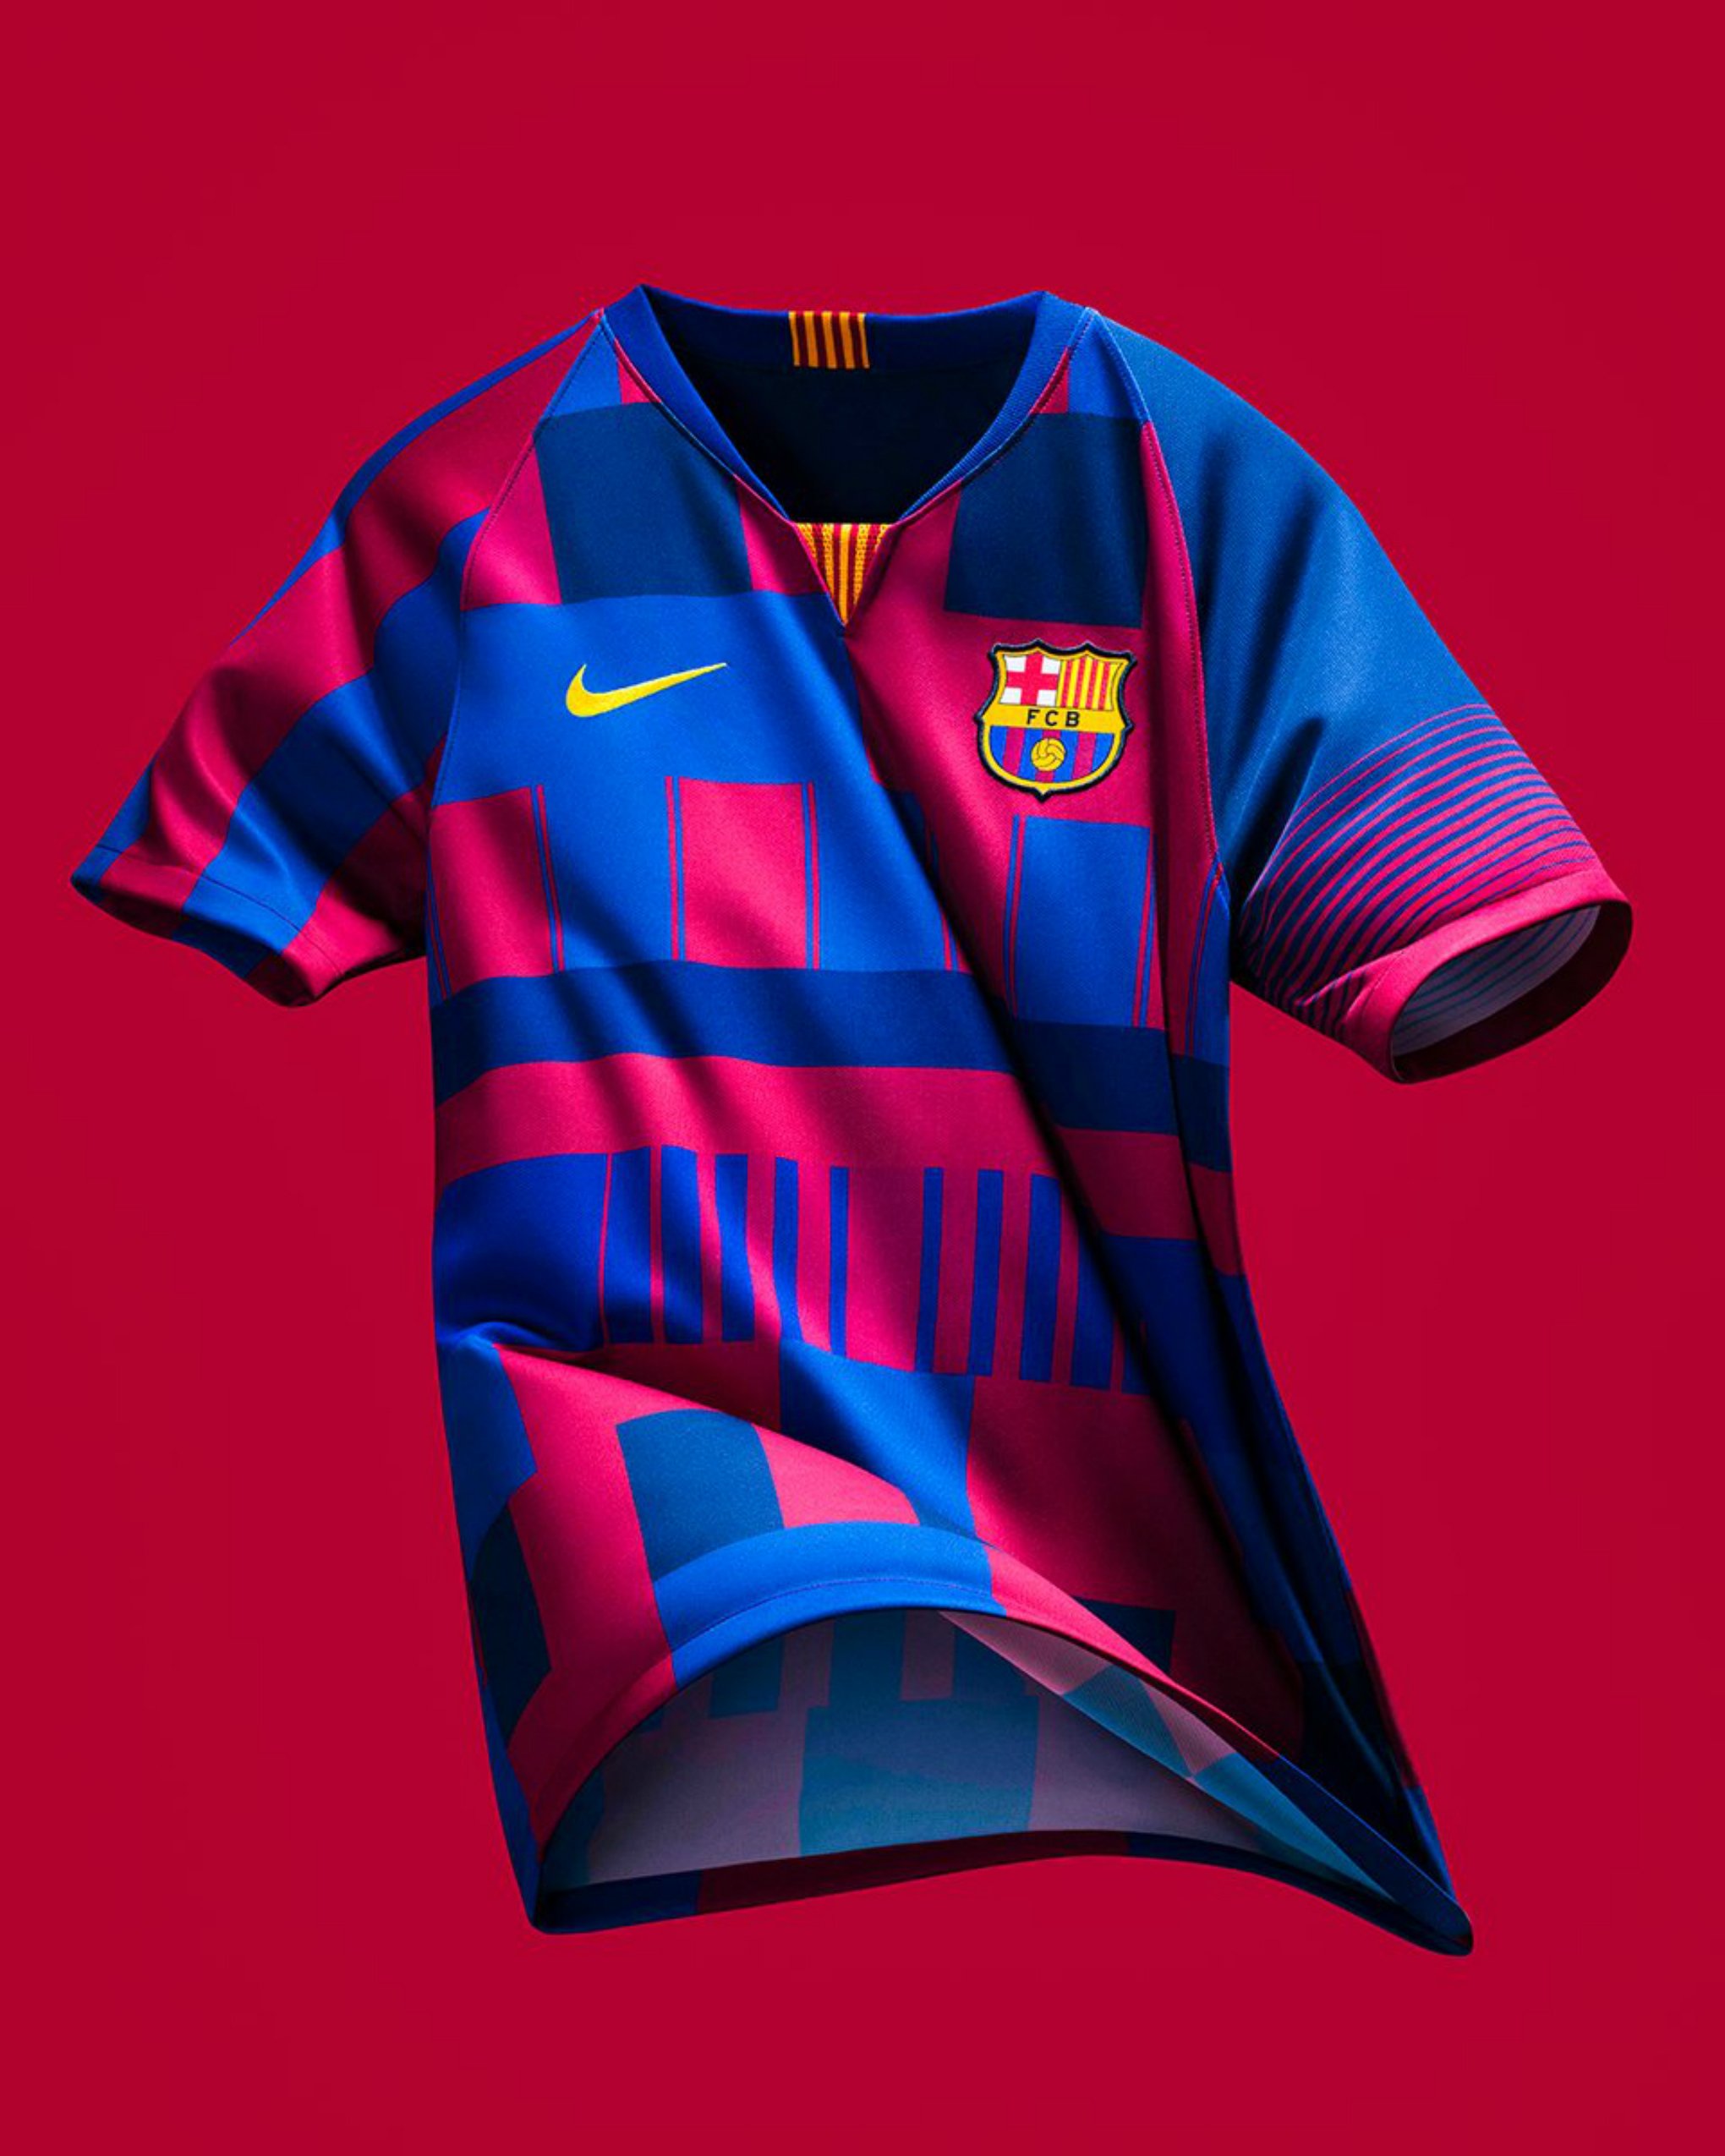 Nike celebra 20 años de relación con el Barça con una camiseta polémica